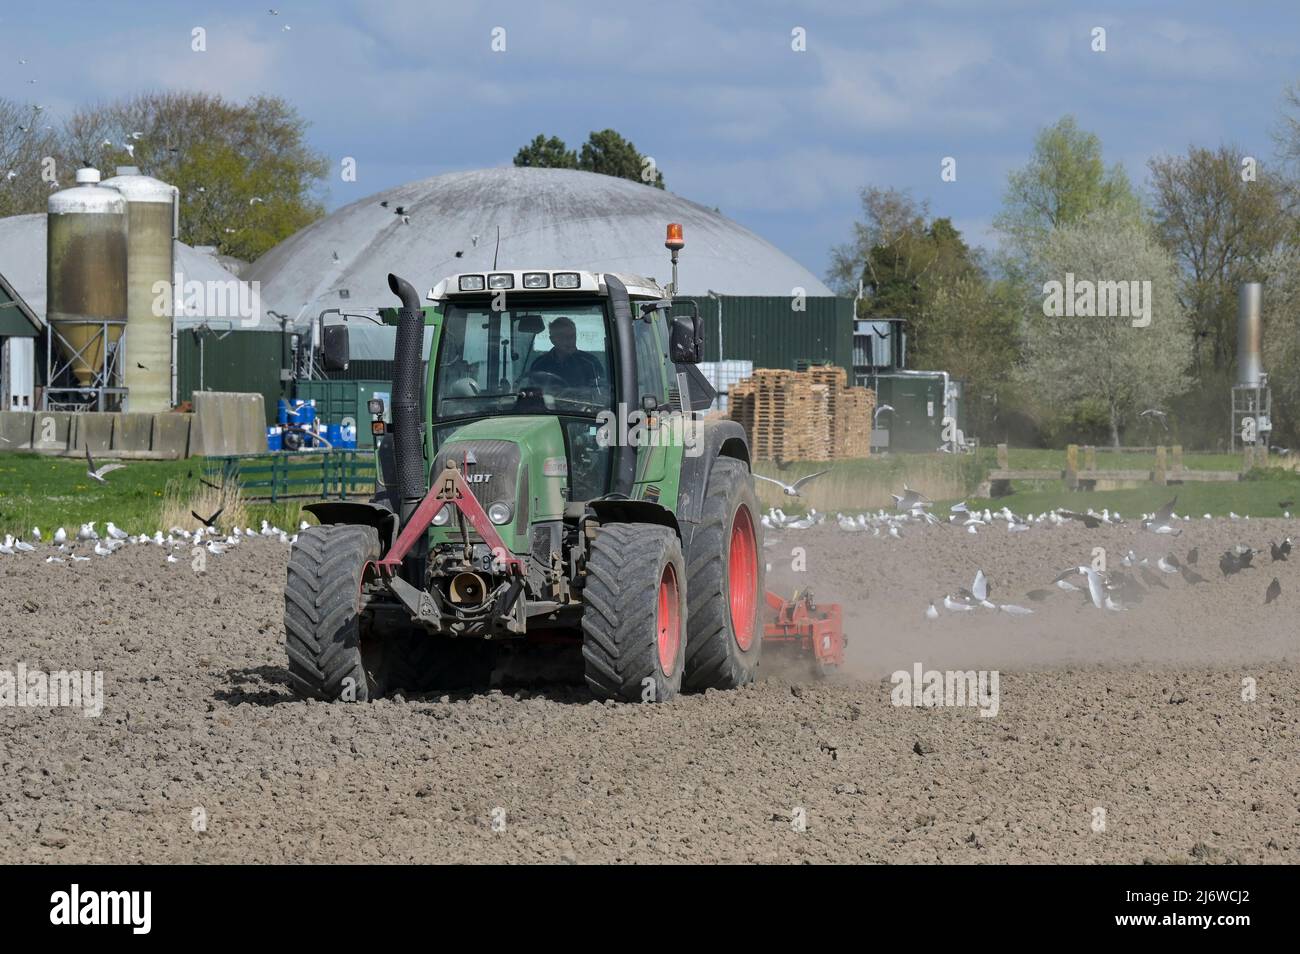 PAESI BASSI, Frisia, biogas Plant and Farming / NIEDERLANDE, Friesland, Ackerbau und Biogasanlage, Fendt Traktor bei Bodenbearbeitung Foto Stock